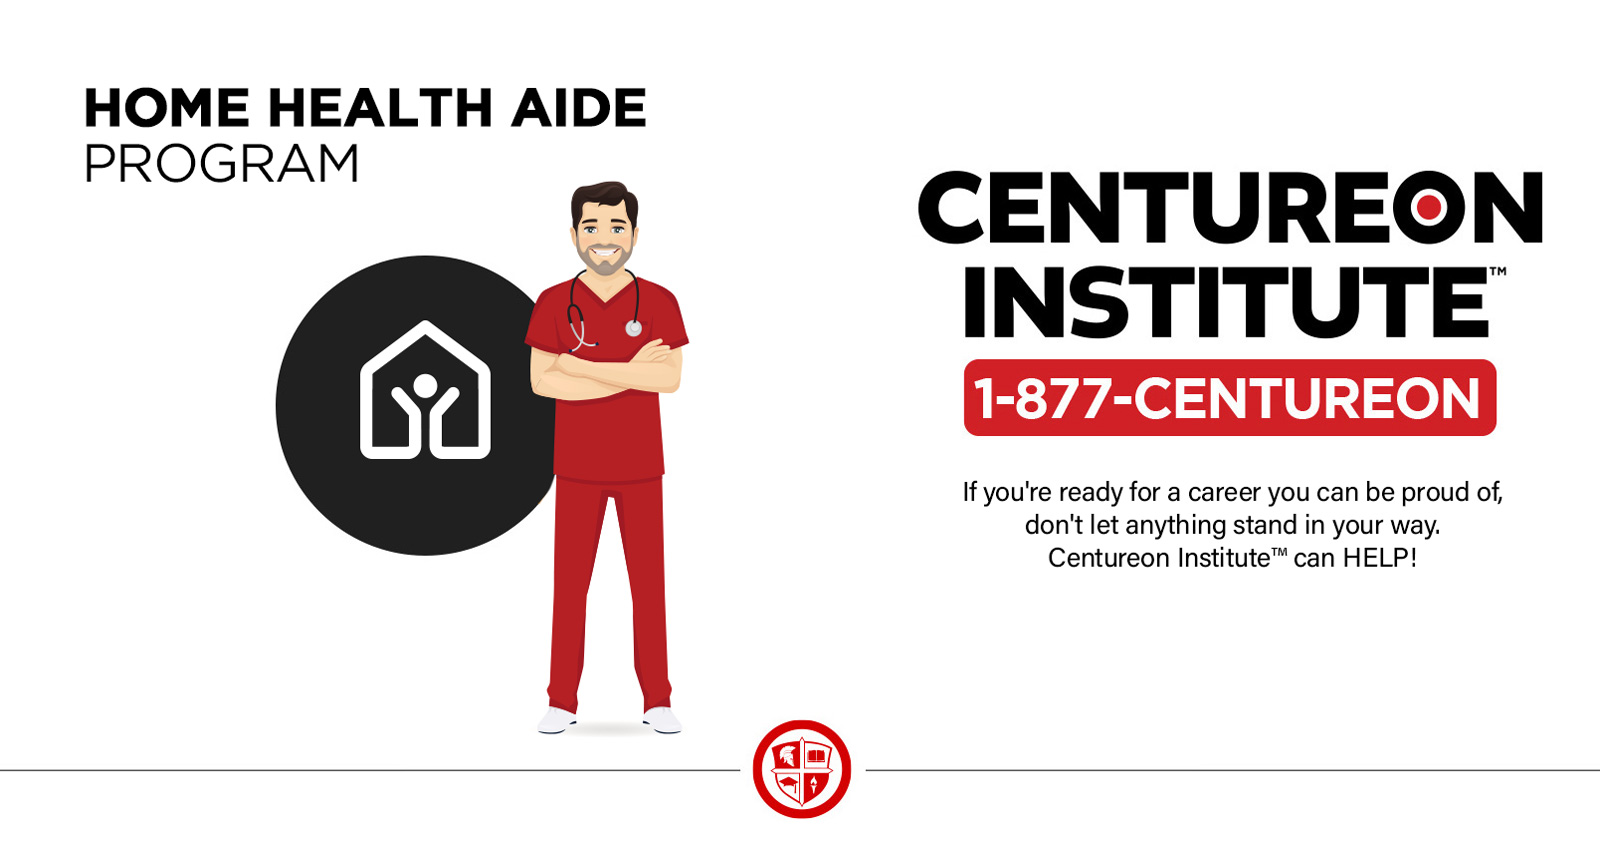 centureon-institute-home-health-aide-1